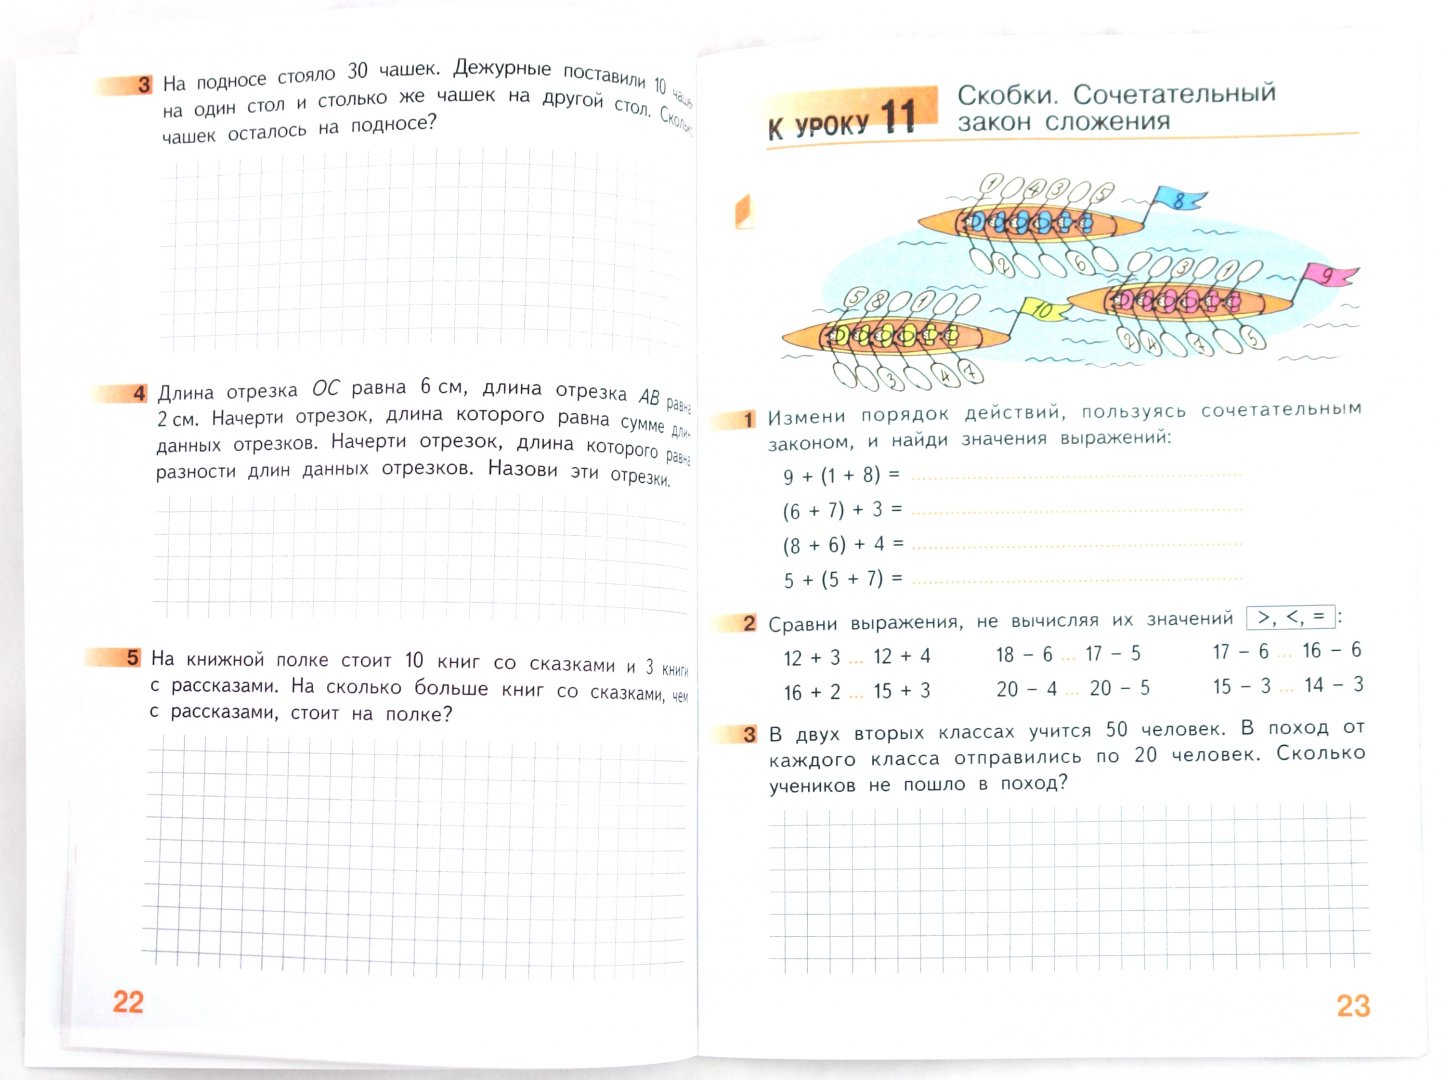 Иллюстрация 1 из 5 для Математика: Рабочая тетрадь для 2 класса начальной школы. В 4-х частях - Гейдман, Мишарина, Зверева | Лабиринт - книги. Источник: Лабиринт